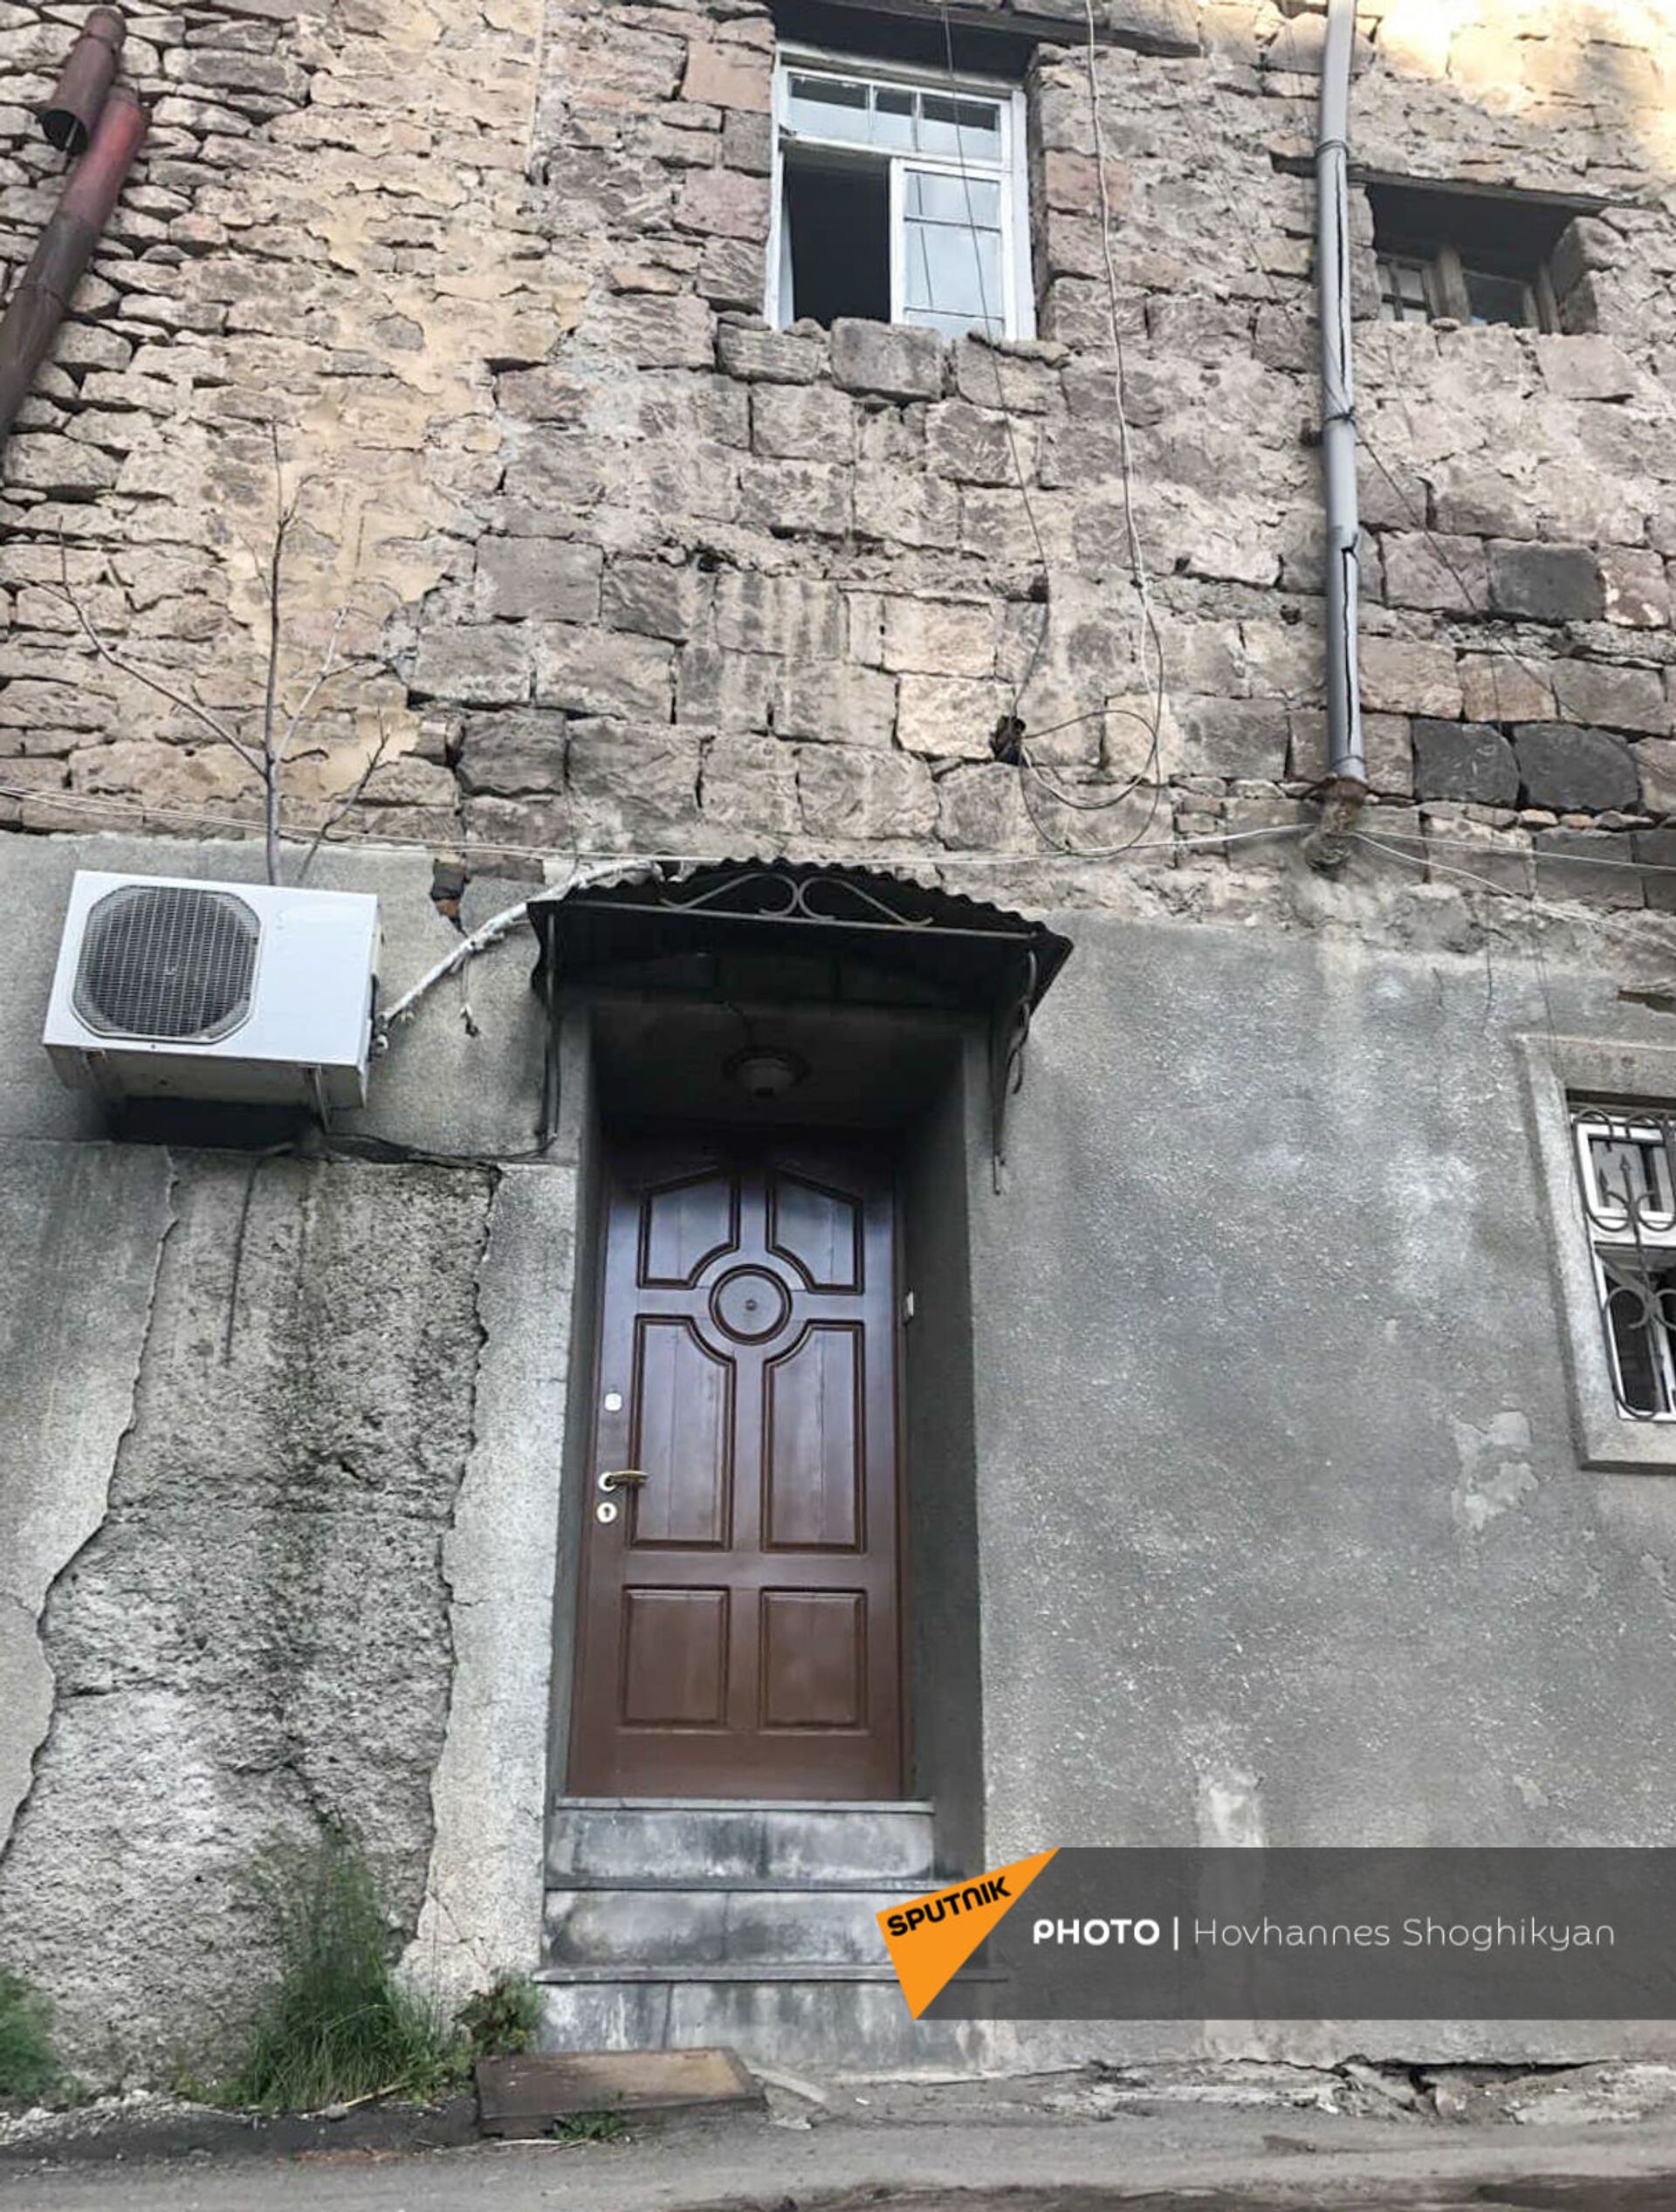 Судьба здания конца XIX века в Ереване зависит от заключения министерства - архитектор - Sputnik Армения, 1920, 13.07.2021